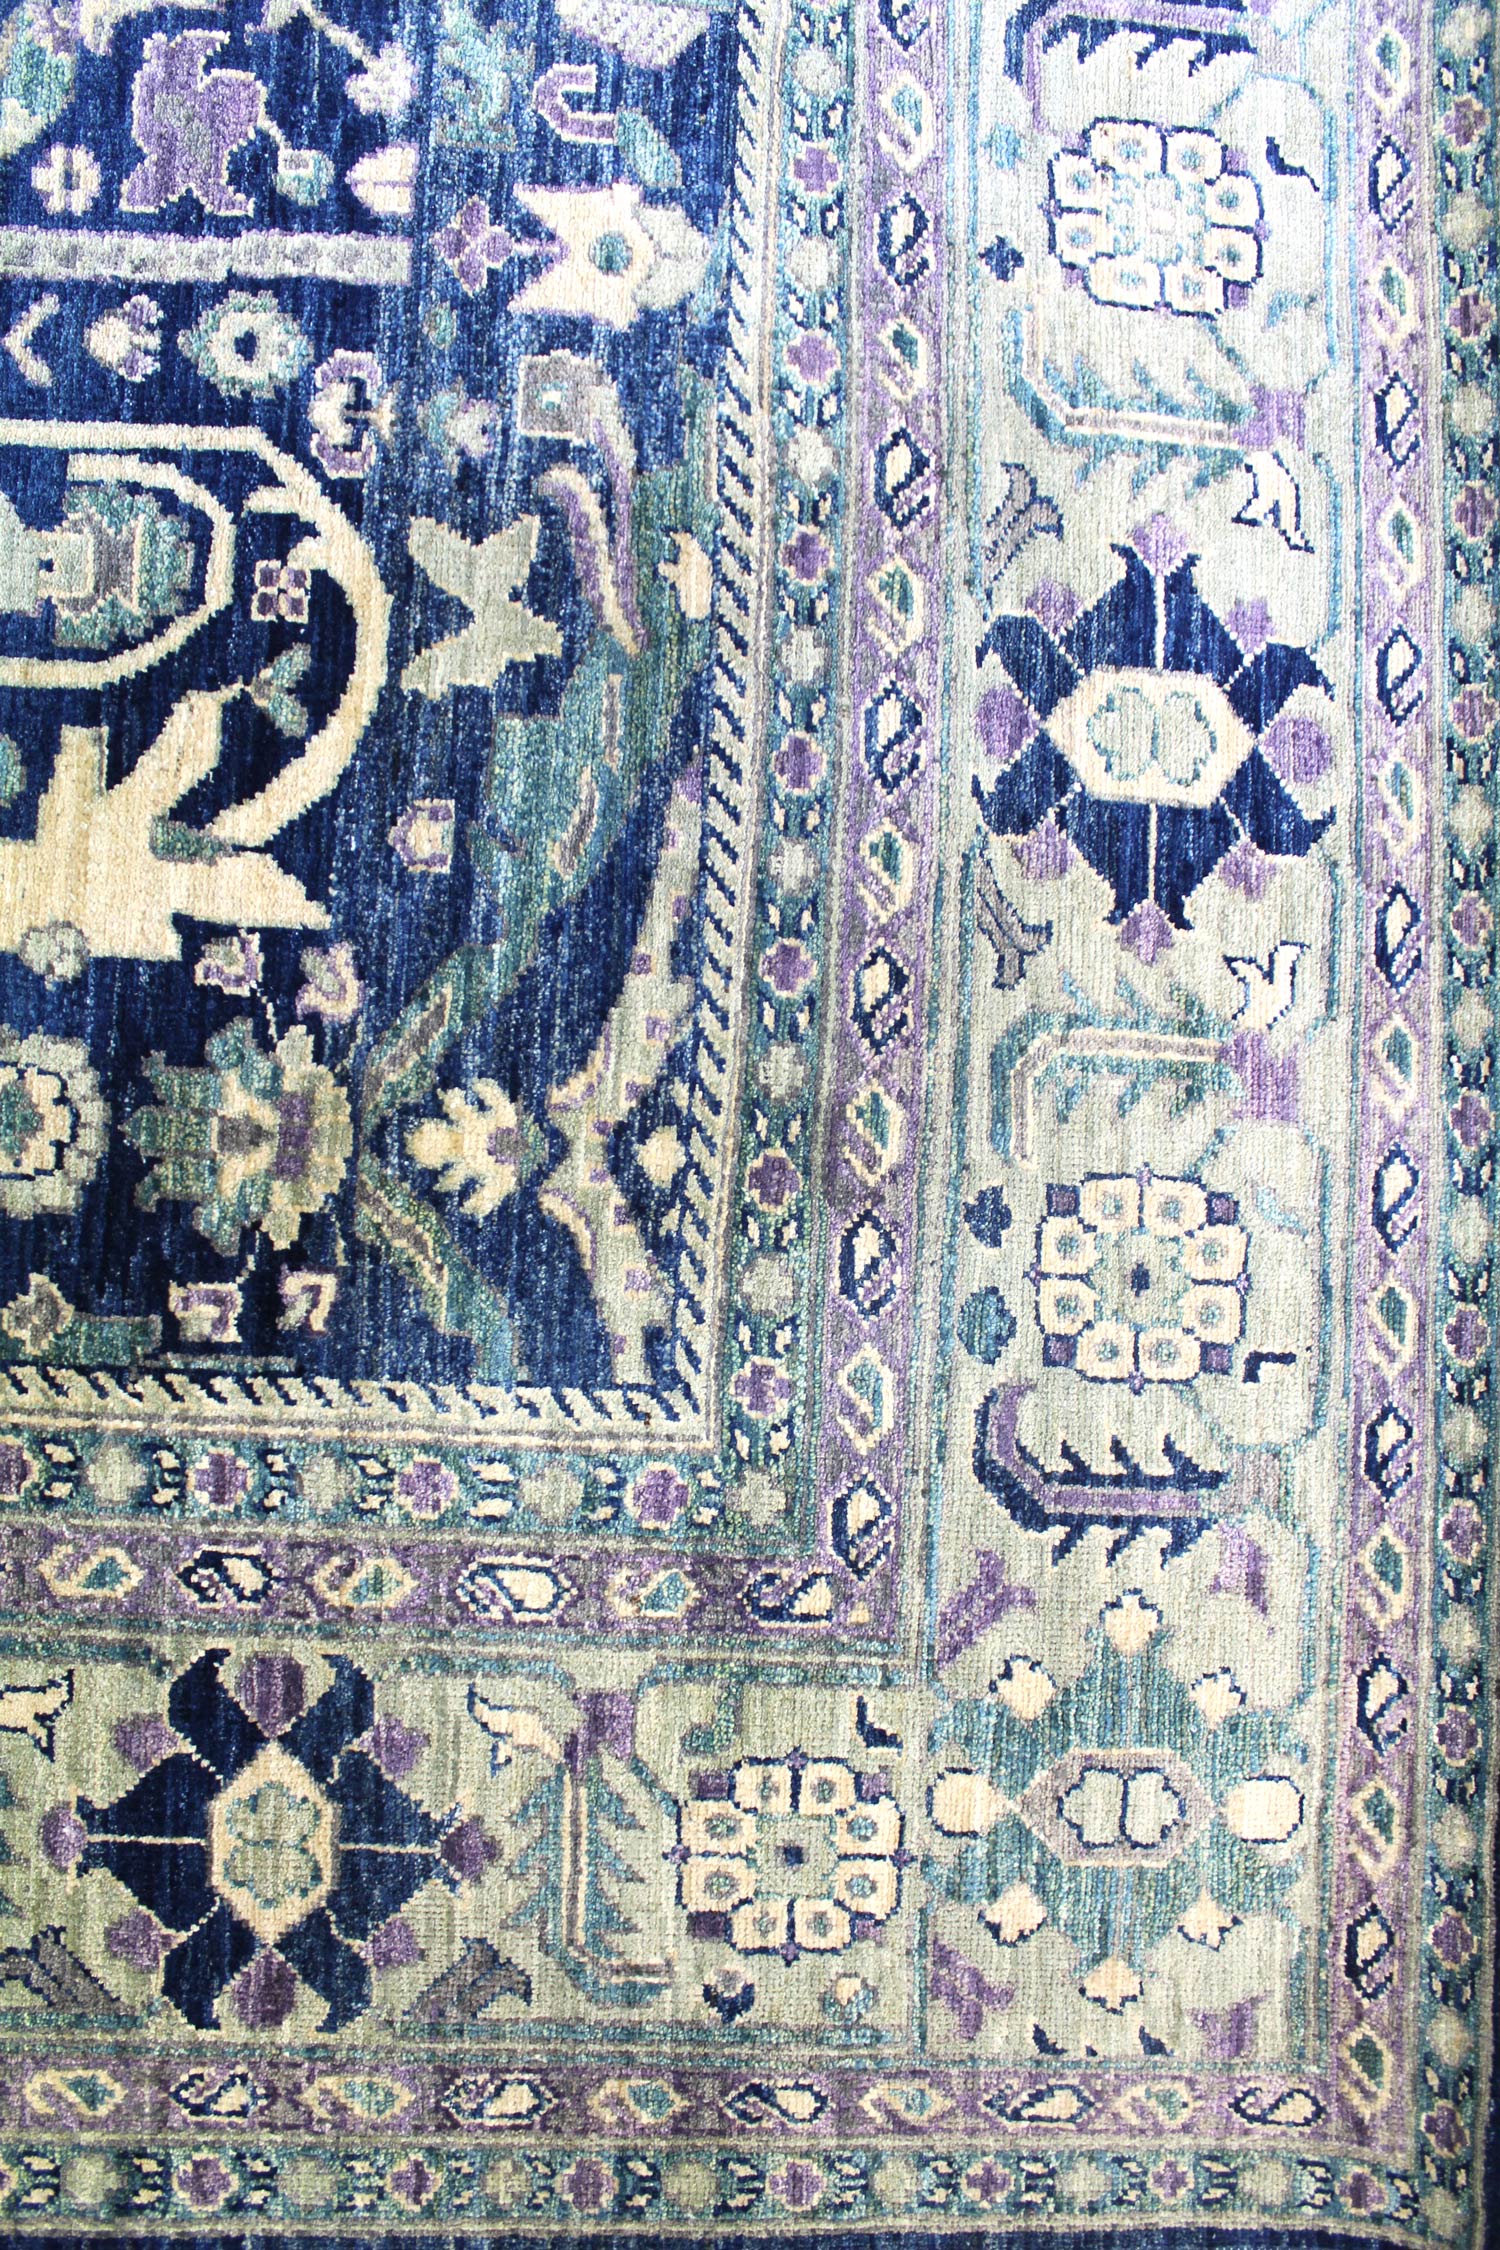 Moustafi Handwoven Traditional Rug, J56535